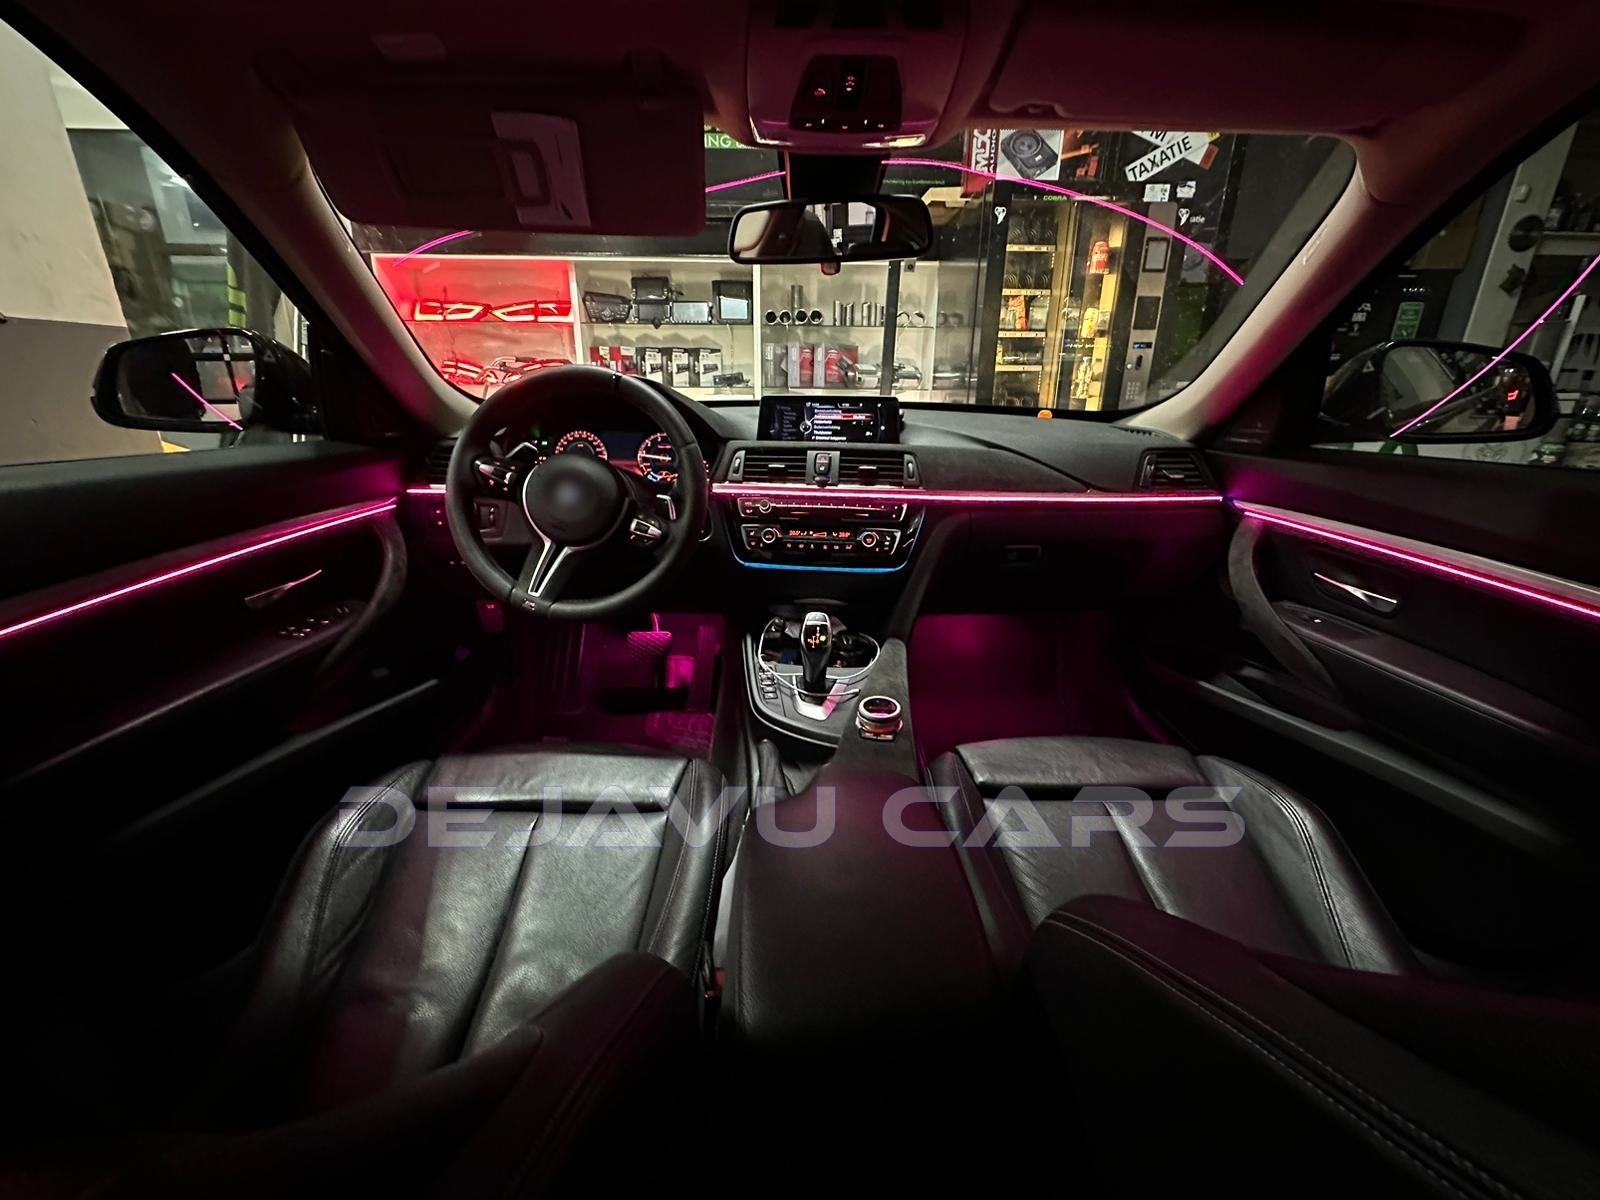 3M Auto Leisten Licht Strang für Auto Inneraum Ambiente Beleuchtung Farb  Auswahl